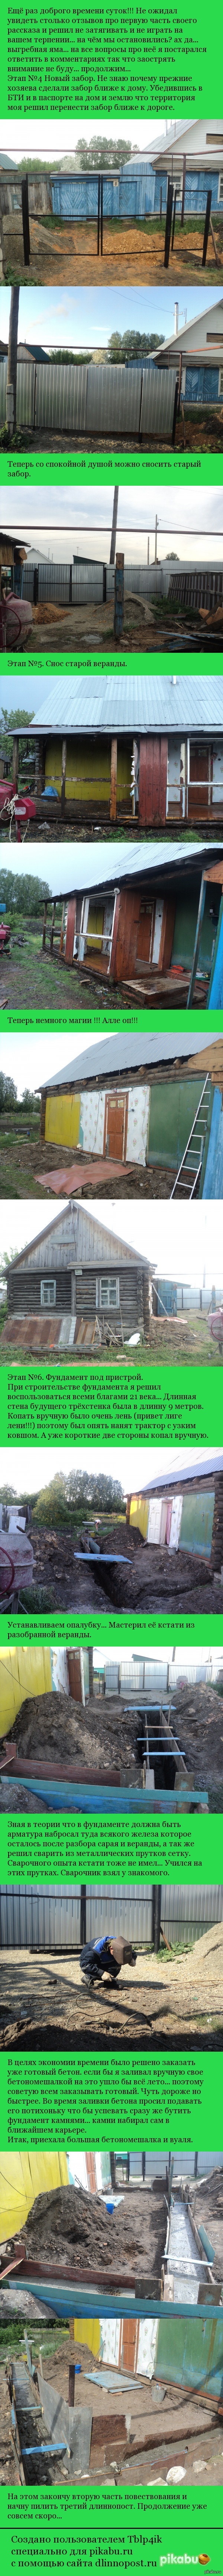   ,        ... ( )  ...    <a href="http://pikabu.ru/story/istoriya_o_tom_do_chego_dovodit_zhelanie_posidet_v_tyoplom_tualete_chast_pervaya_3233031">http://pikabu.ru/story/_3233031</a>